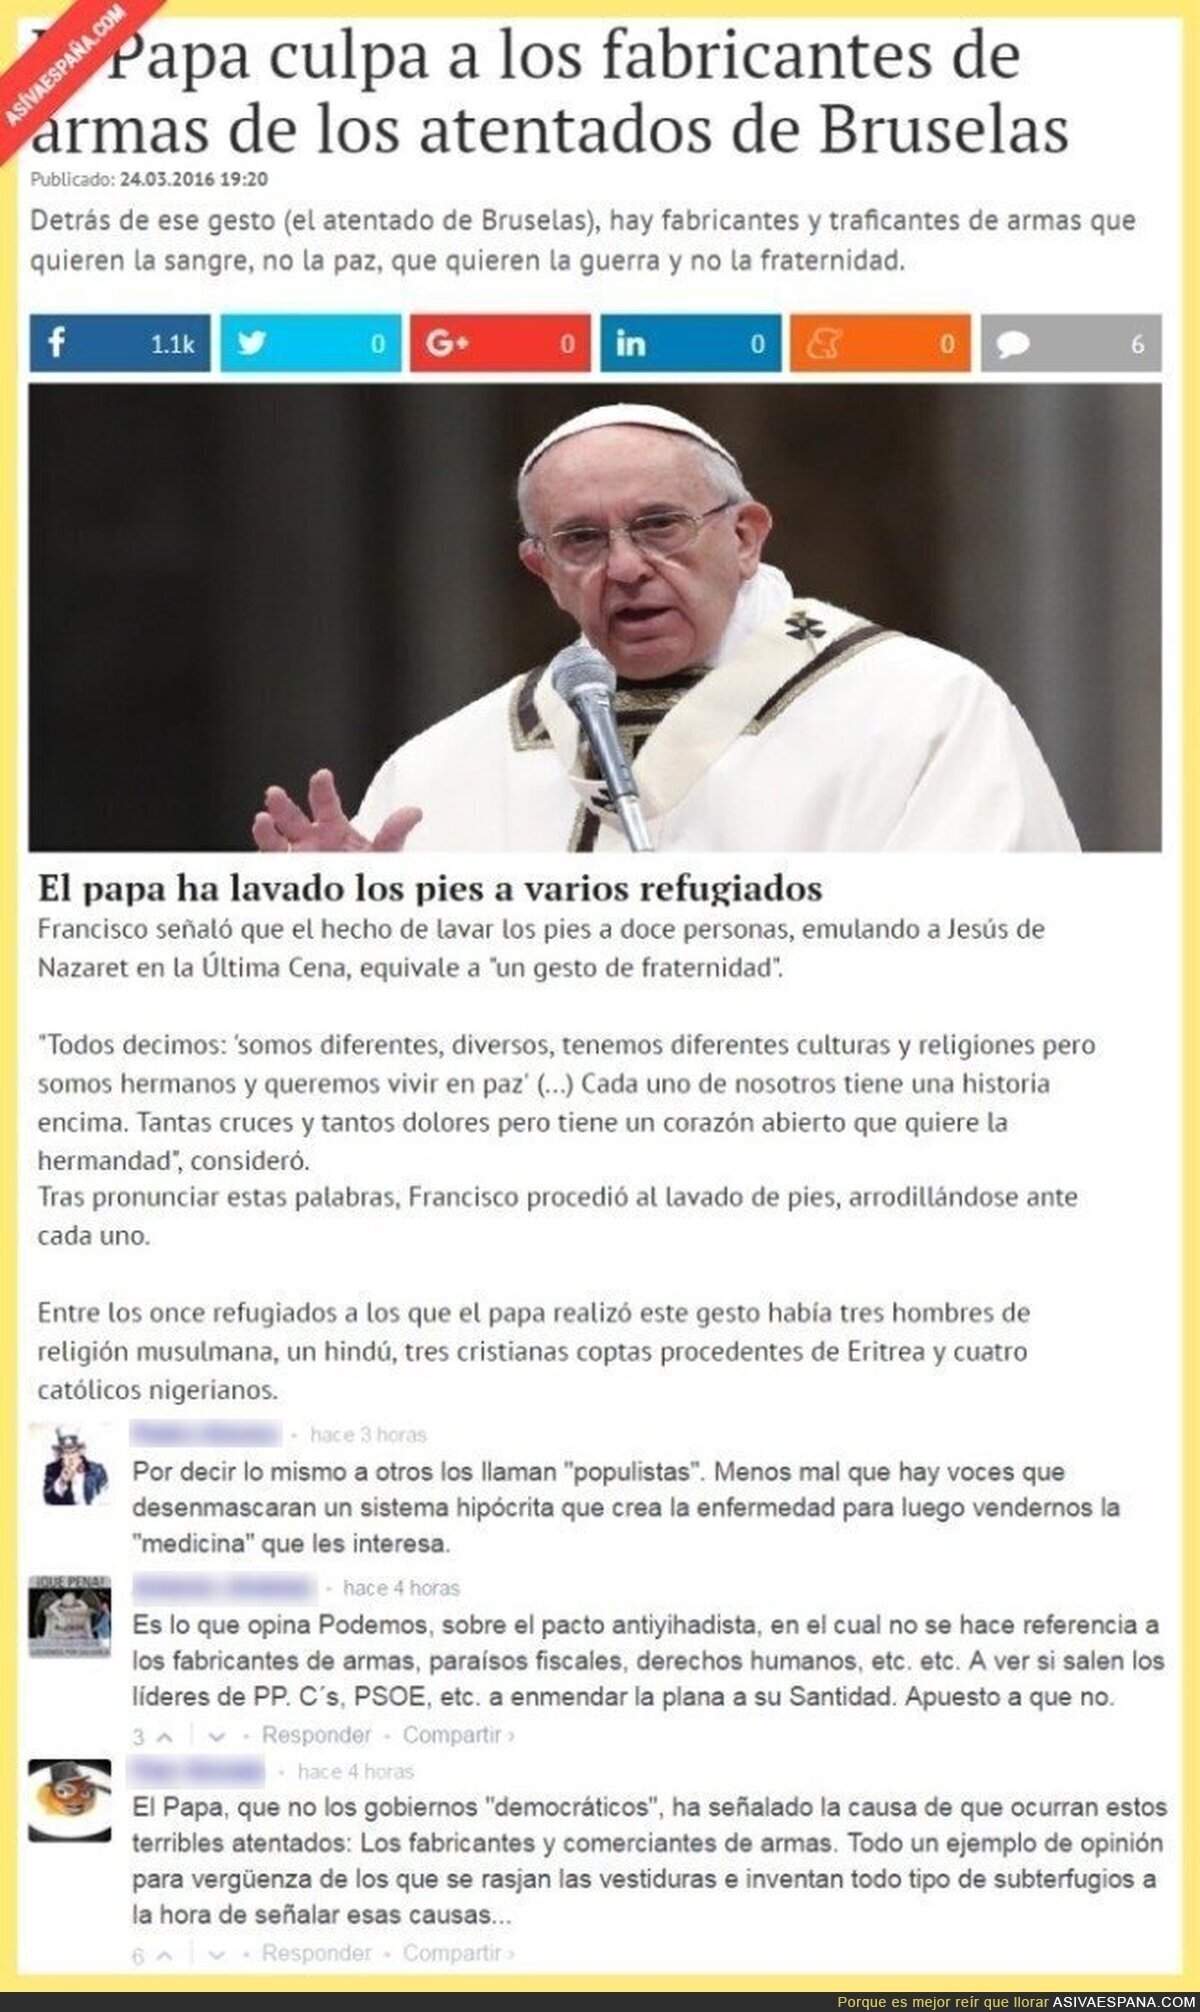 El Papa ahora es bolivariano